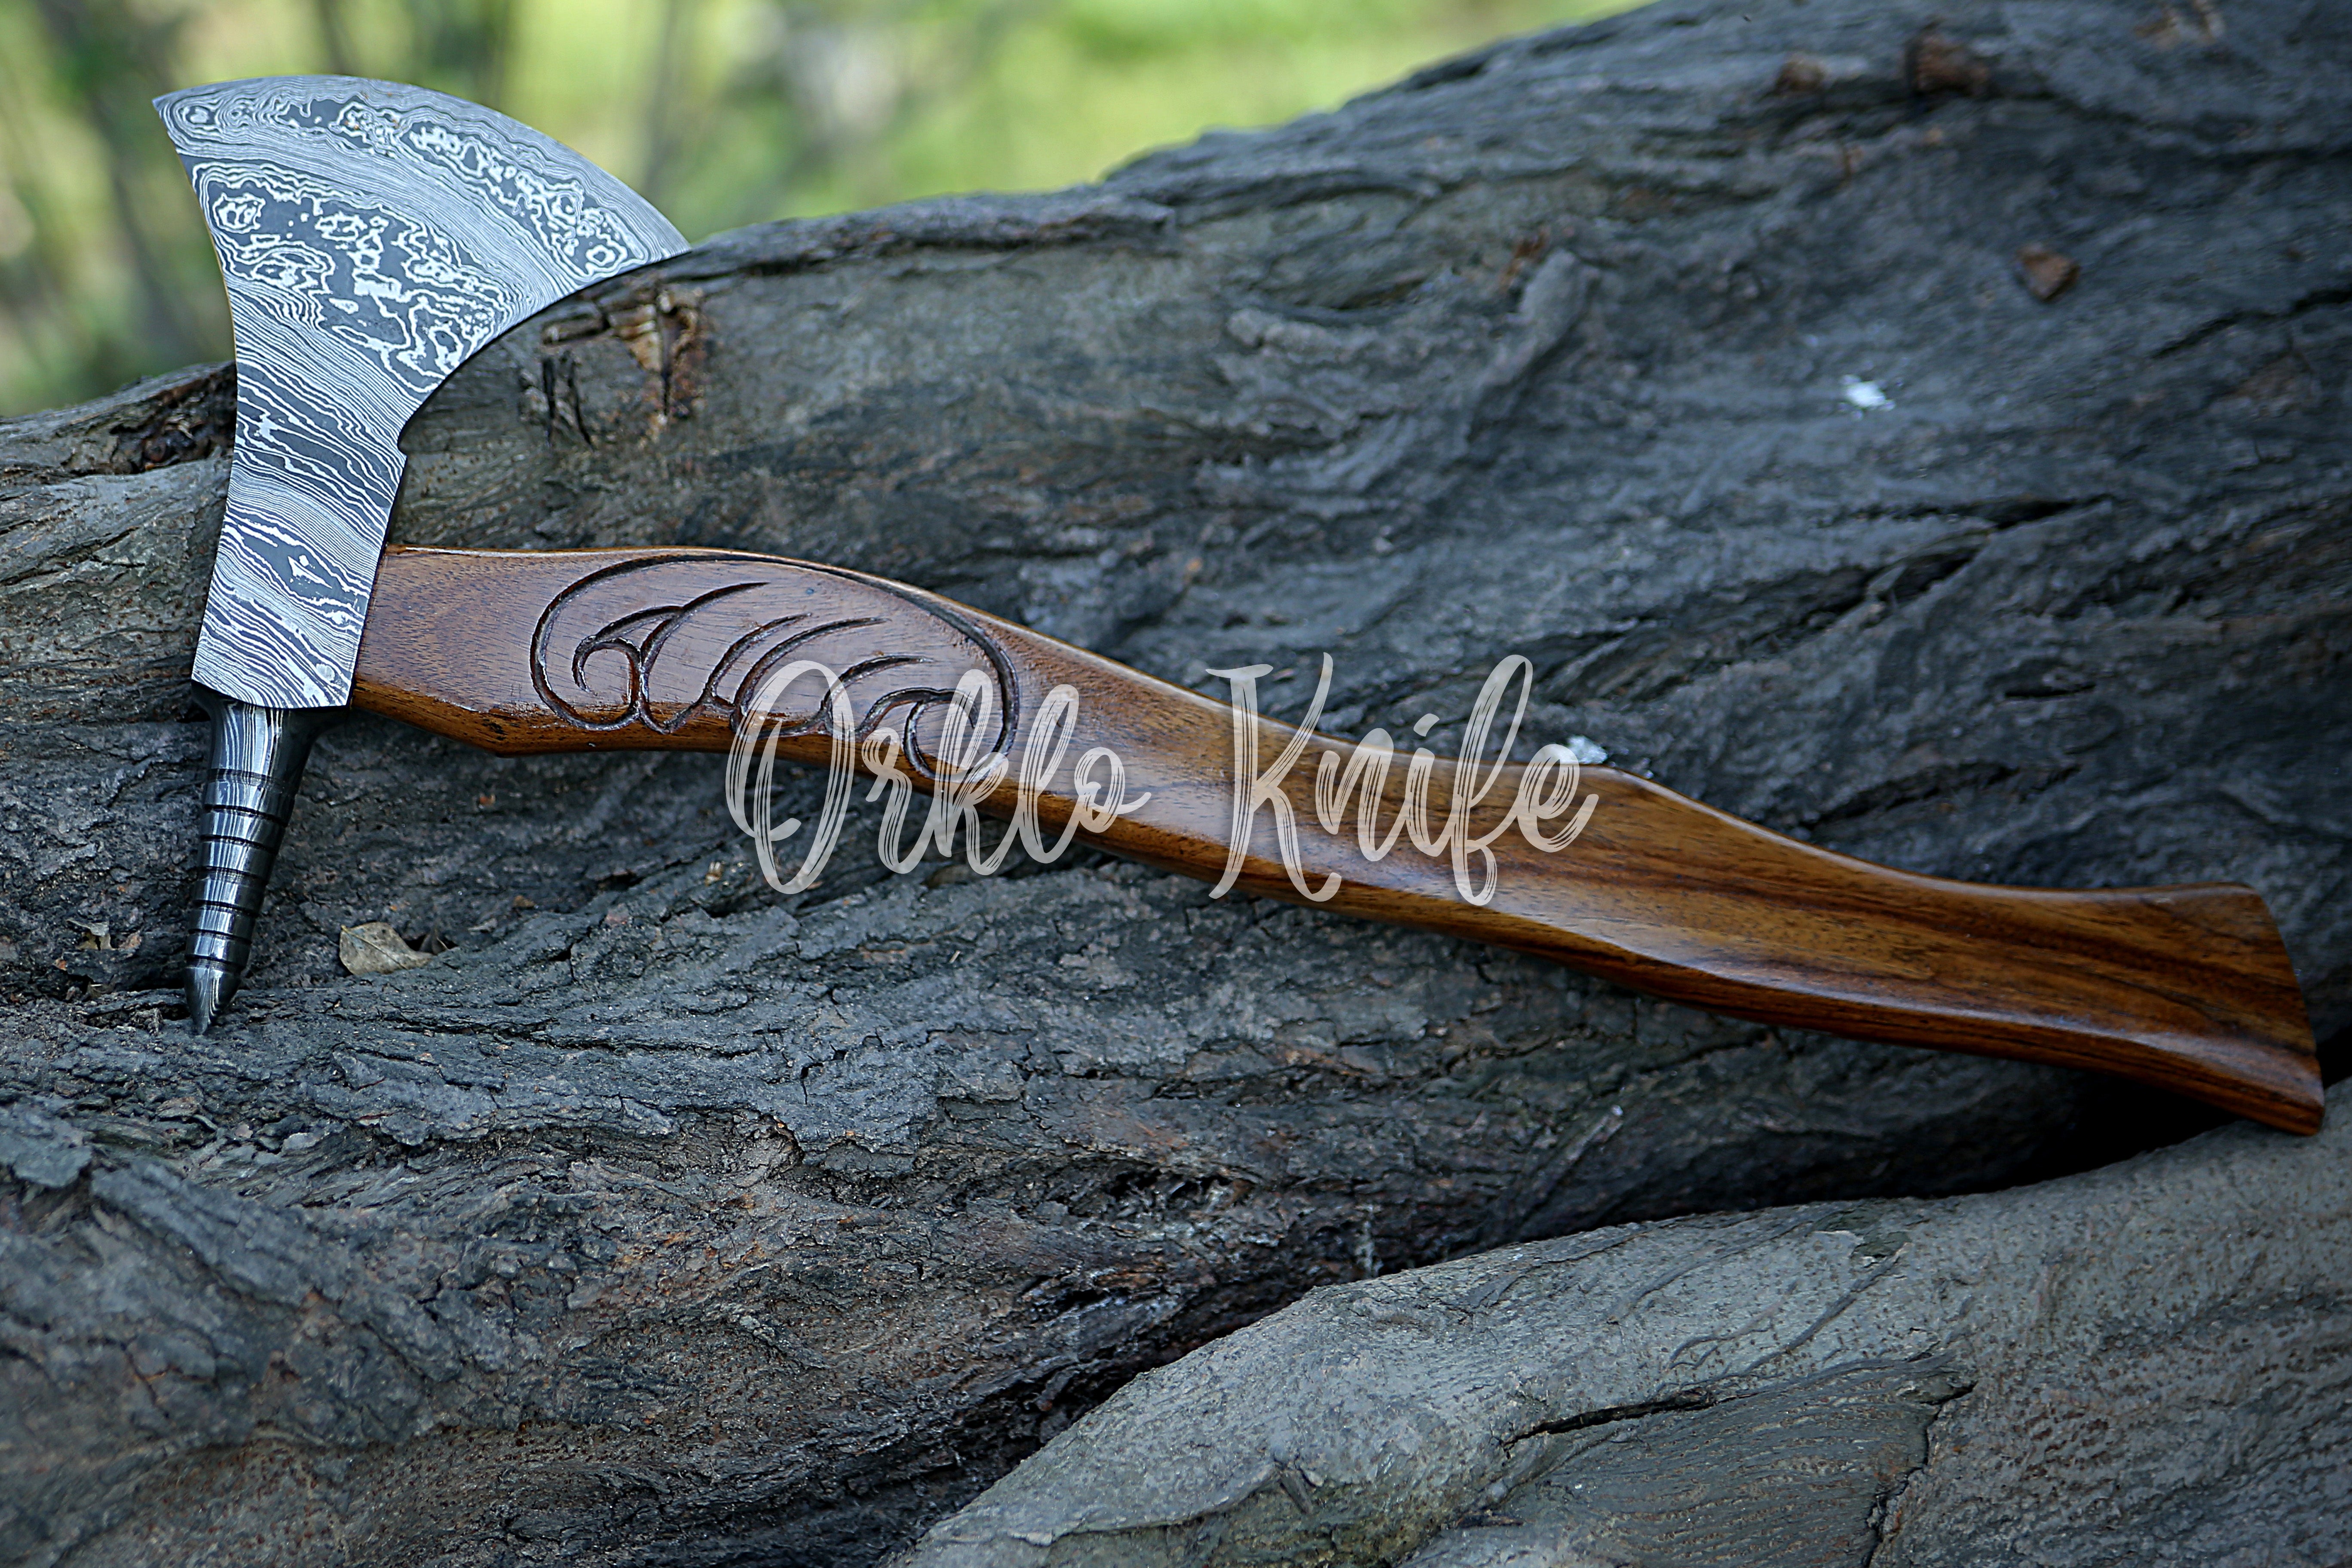 Handmade Damascus steel axe - Orkloknife